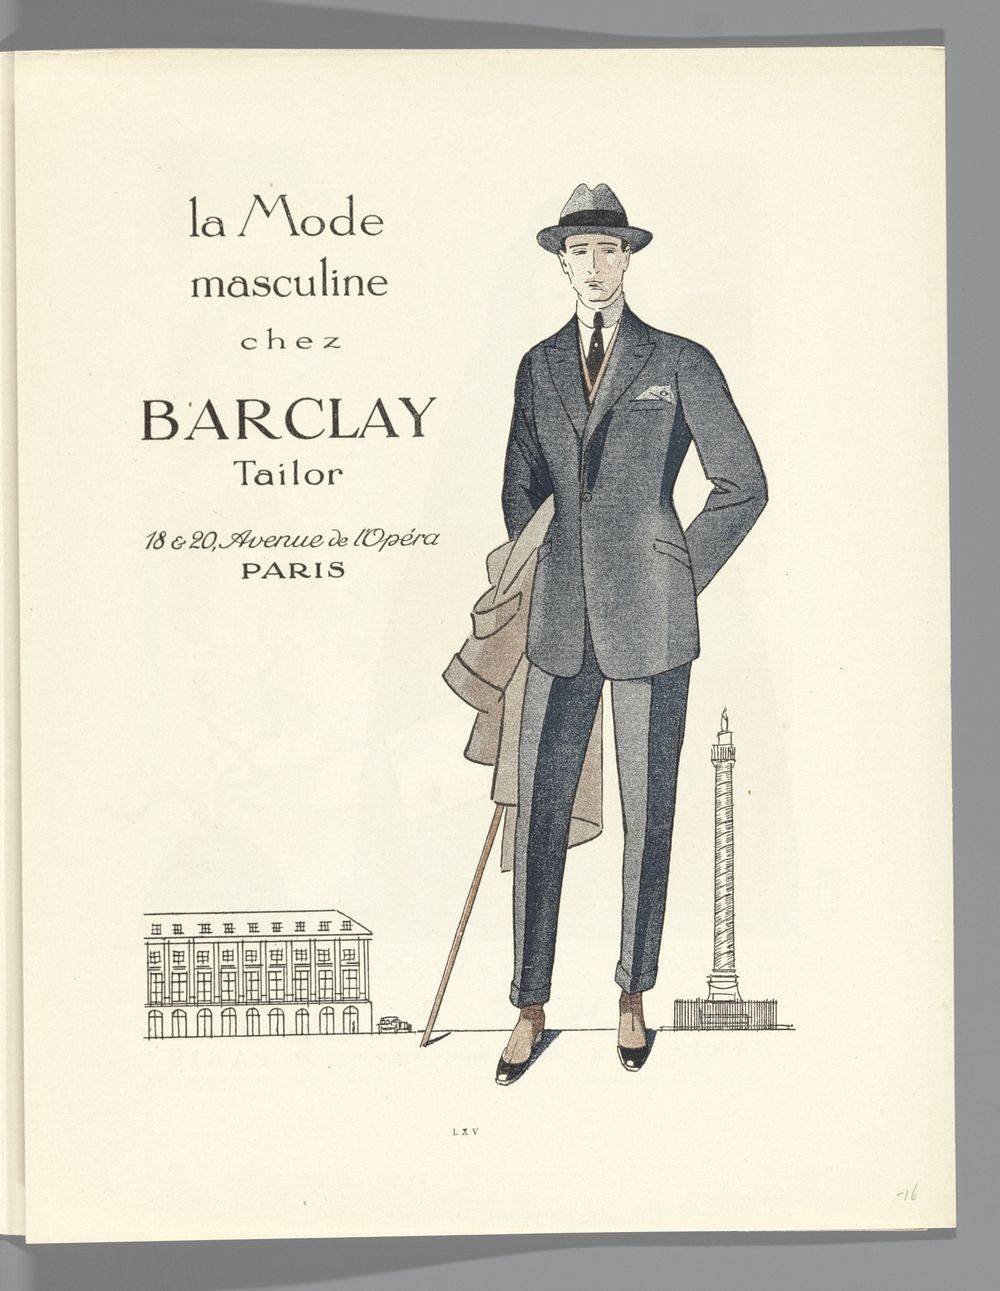 Gazette du Bon Ton, 1920 - No. 8, p. LXV: advertentie Barclay (1920) by Lucien Vogel, The Field Press, Naville et Cie, Condé…